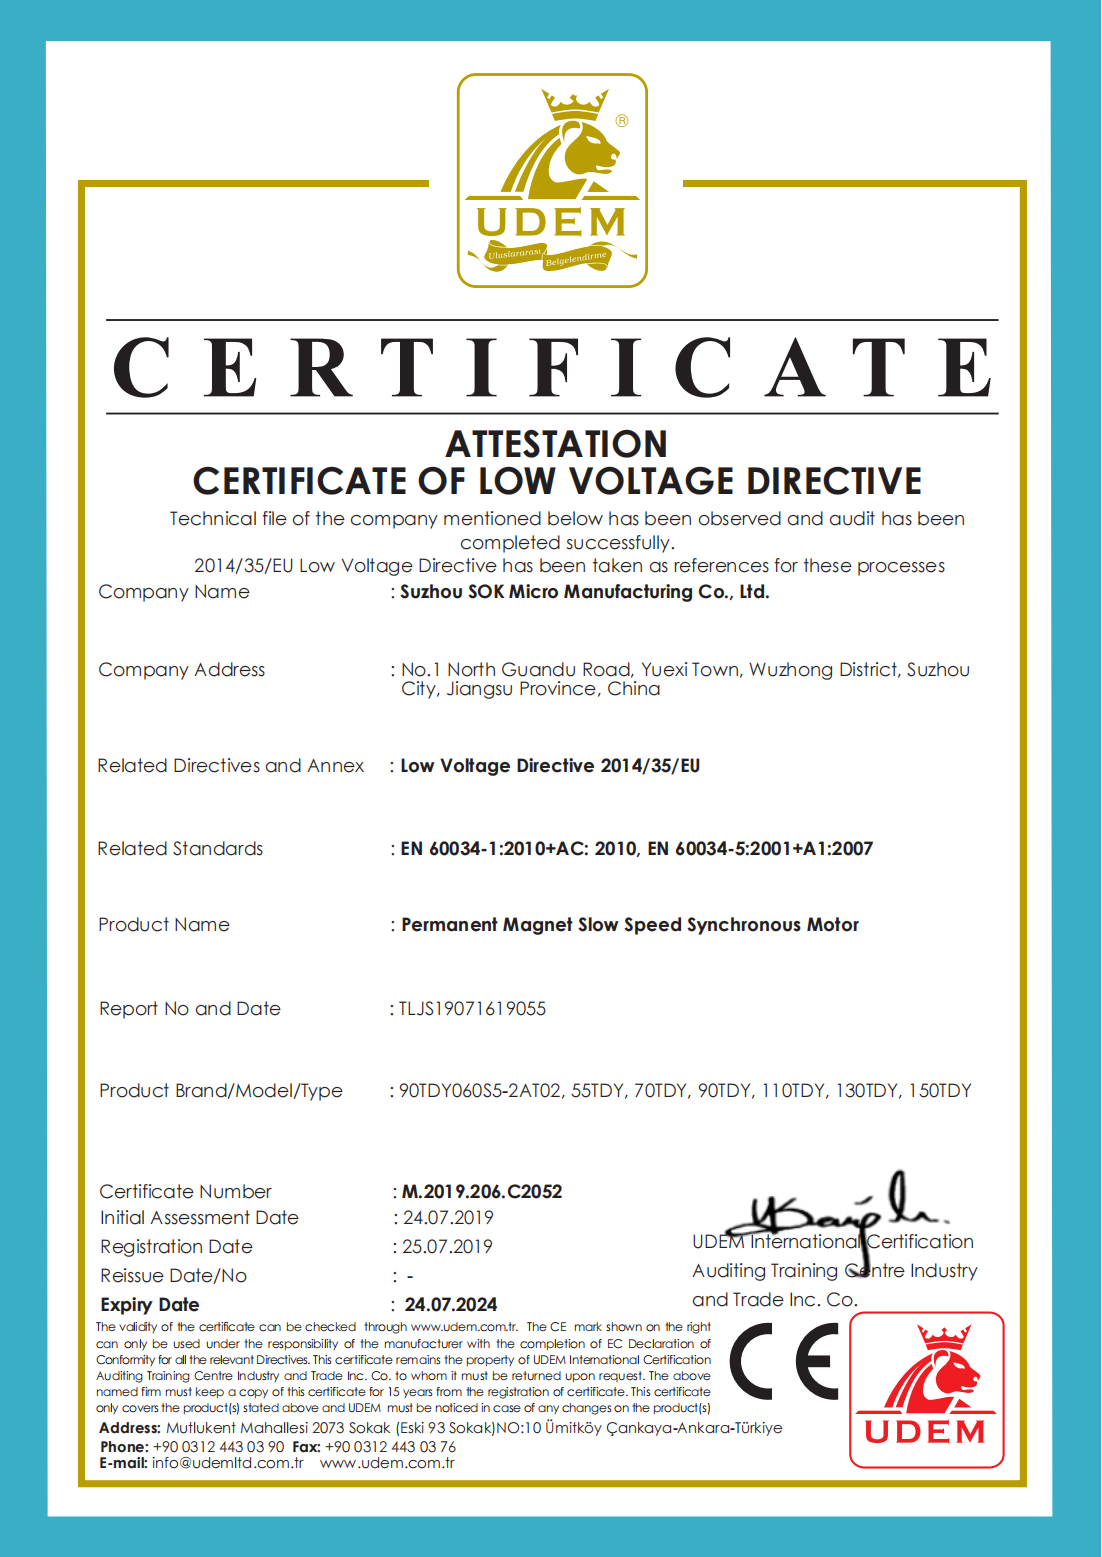 永磁低速同步电机 LVD认证证书(19055) M.2019.206.C2052(1)